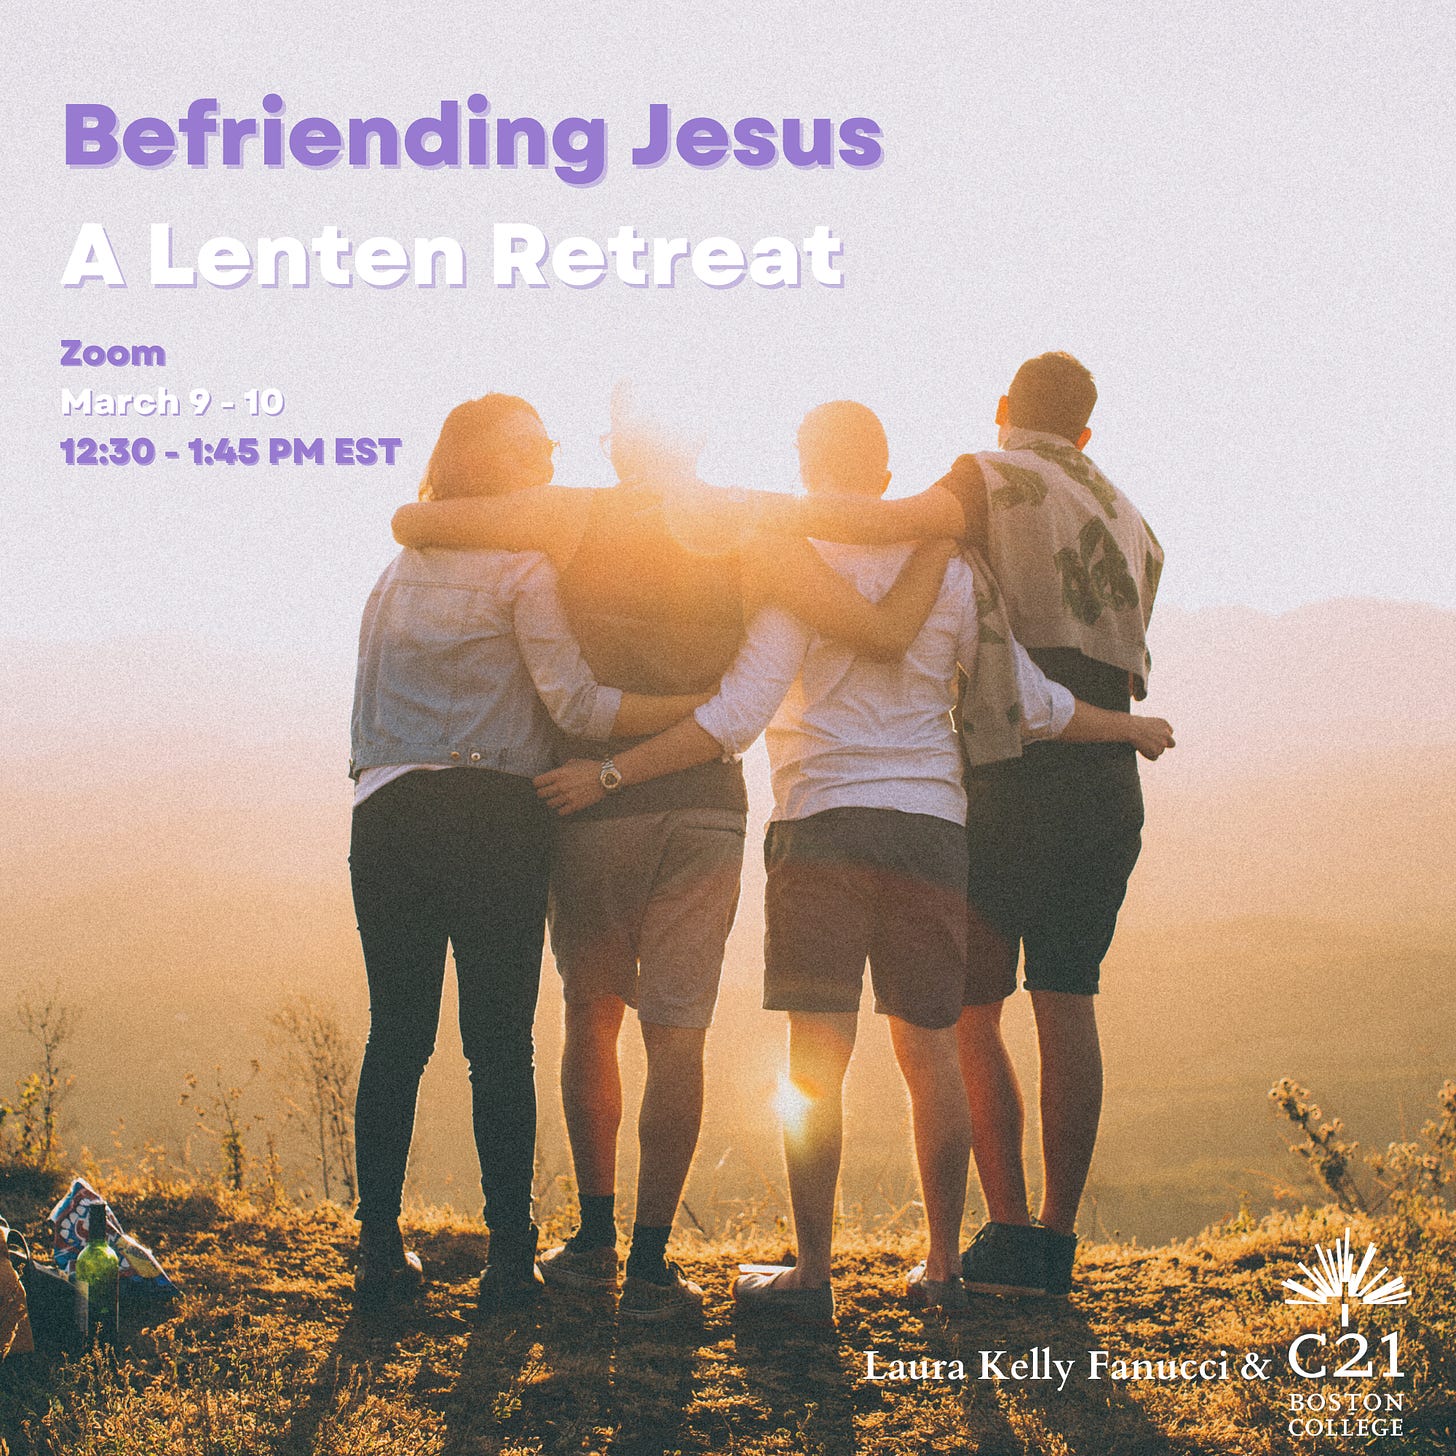 Befriending Jesus A Lenten Retreat Square with dates.png